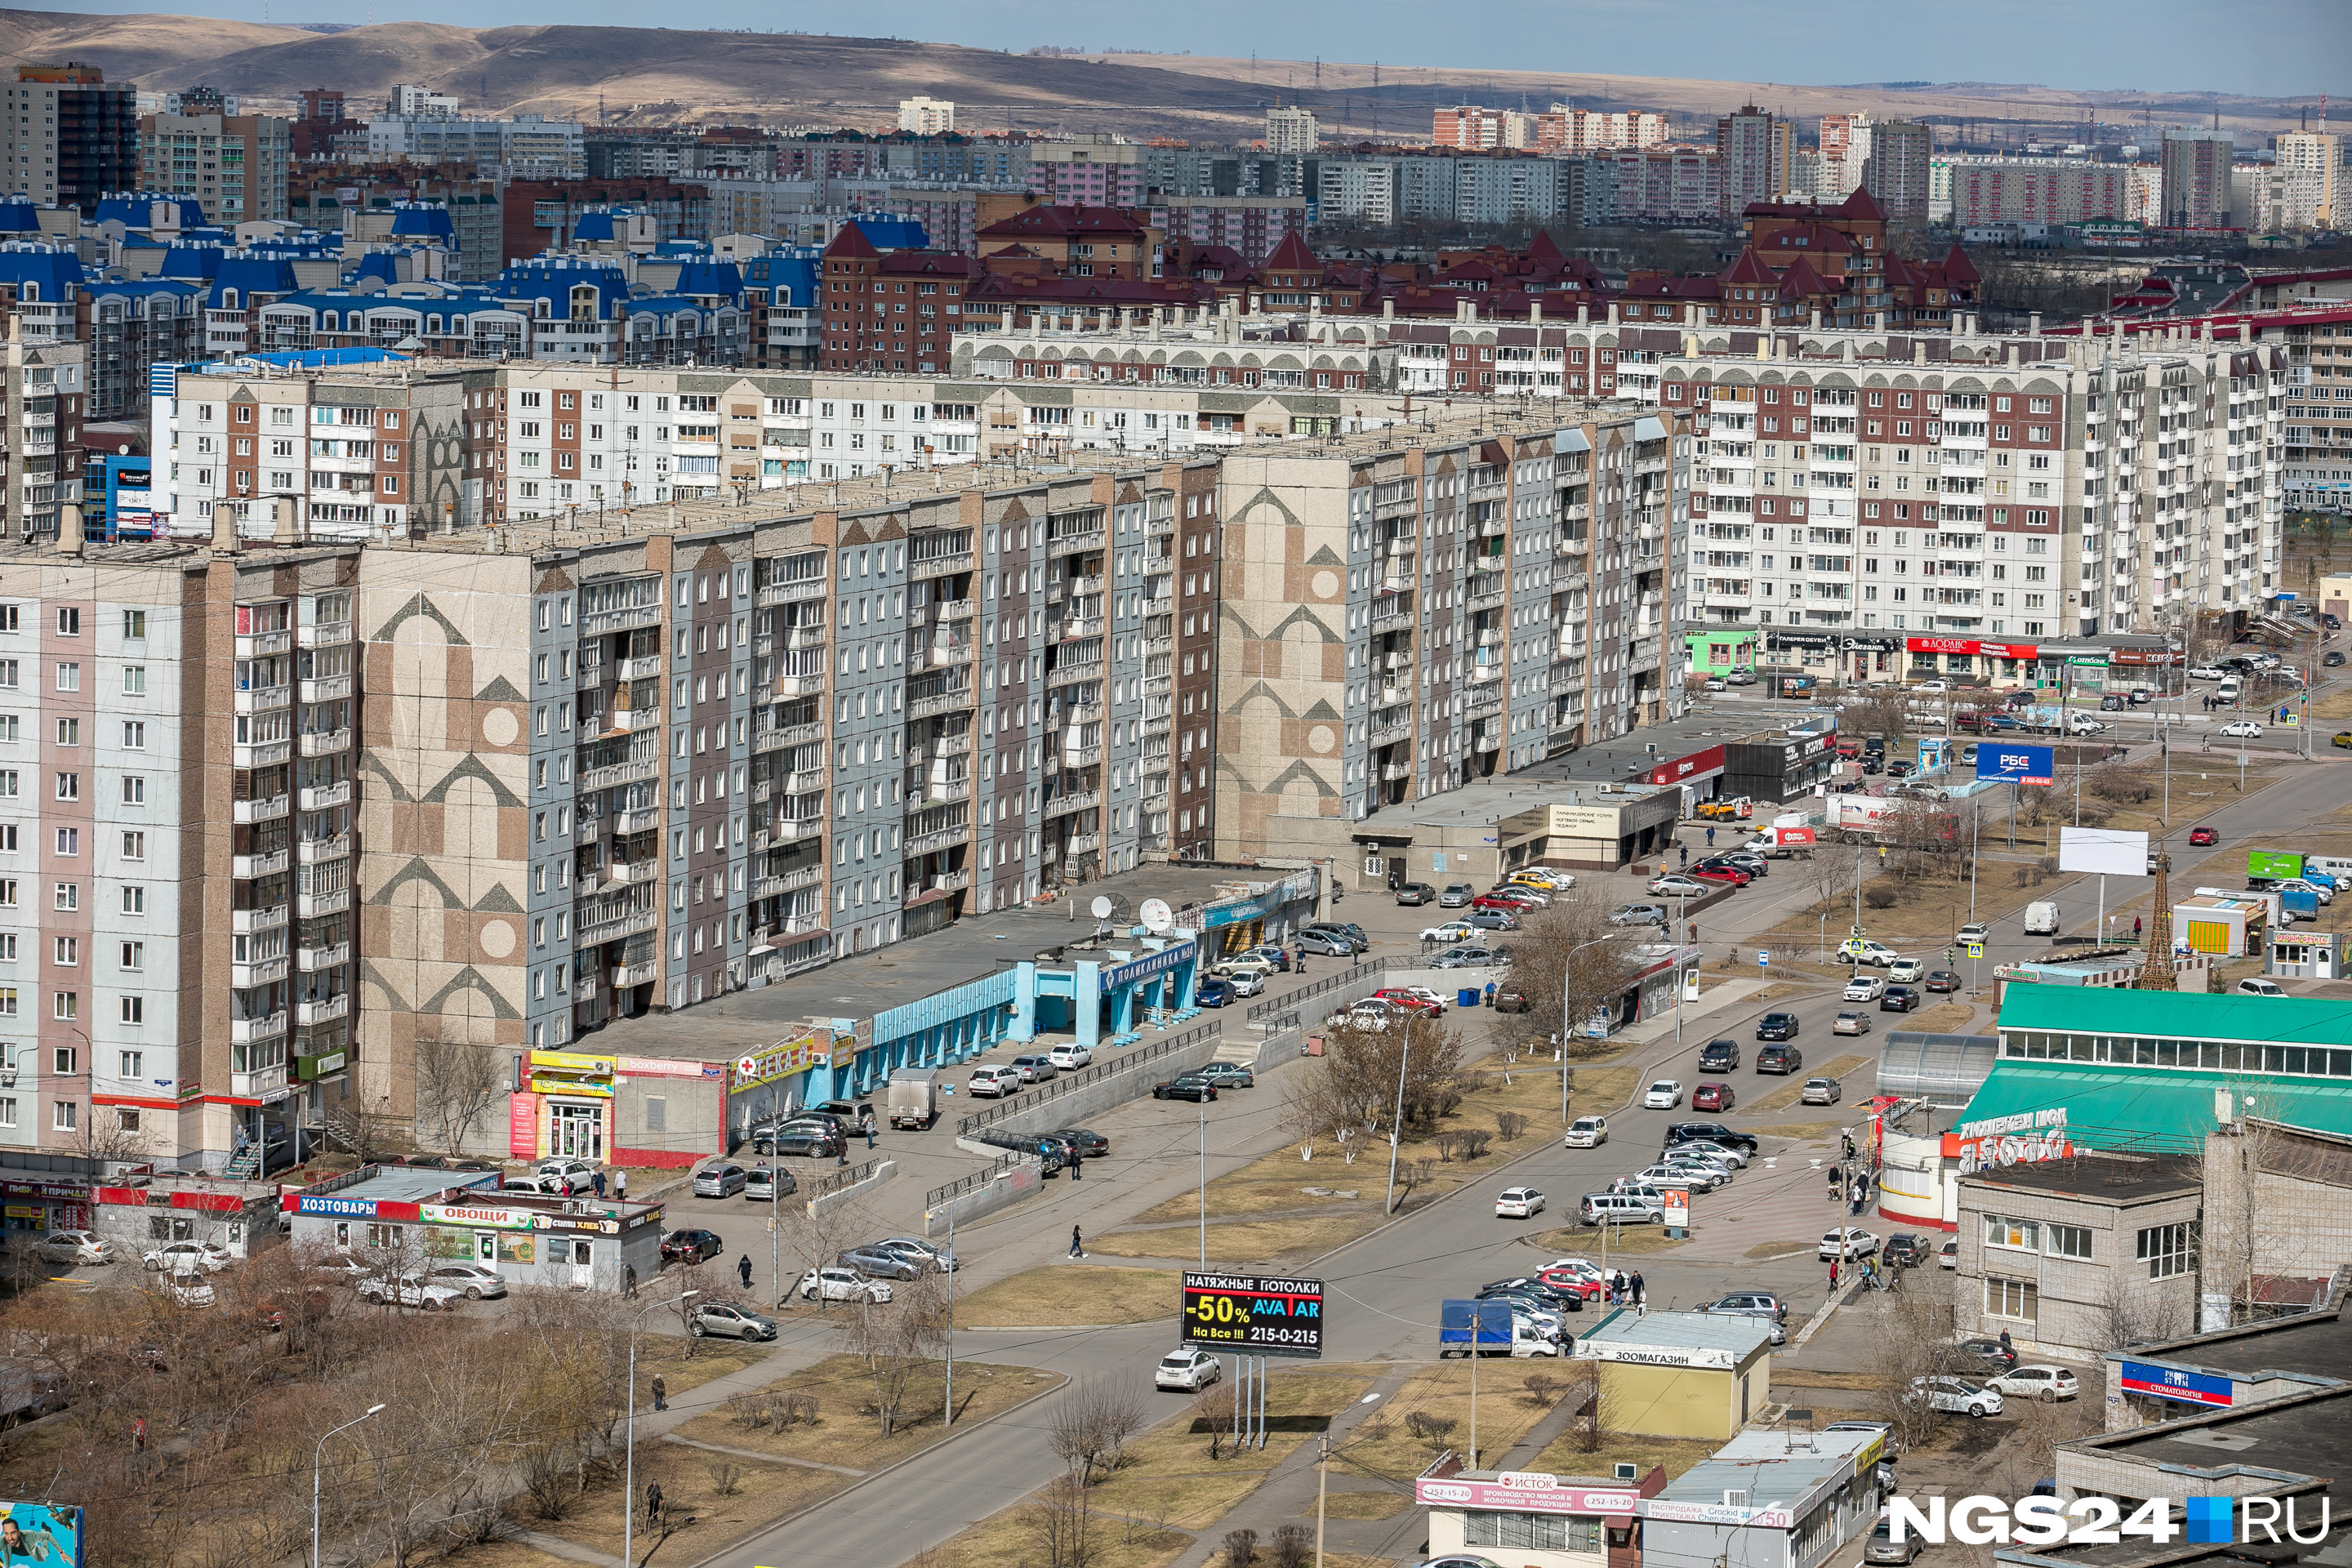 Красноярск, Взлетная: в типовых проектах иногда проявляли фантазию